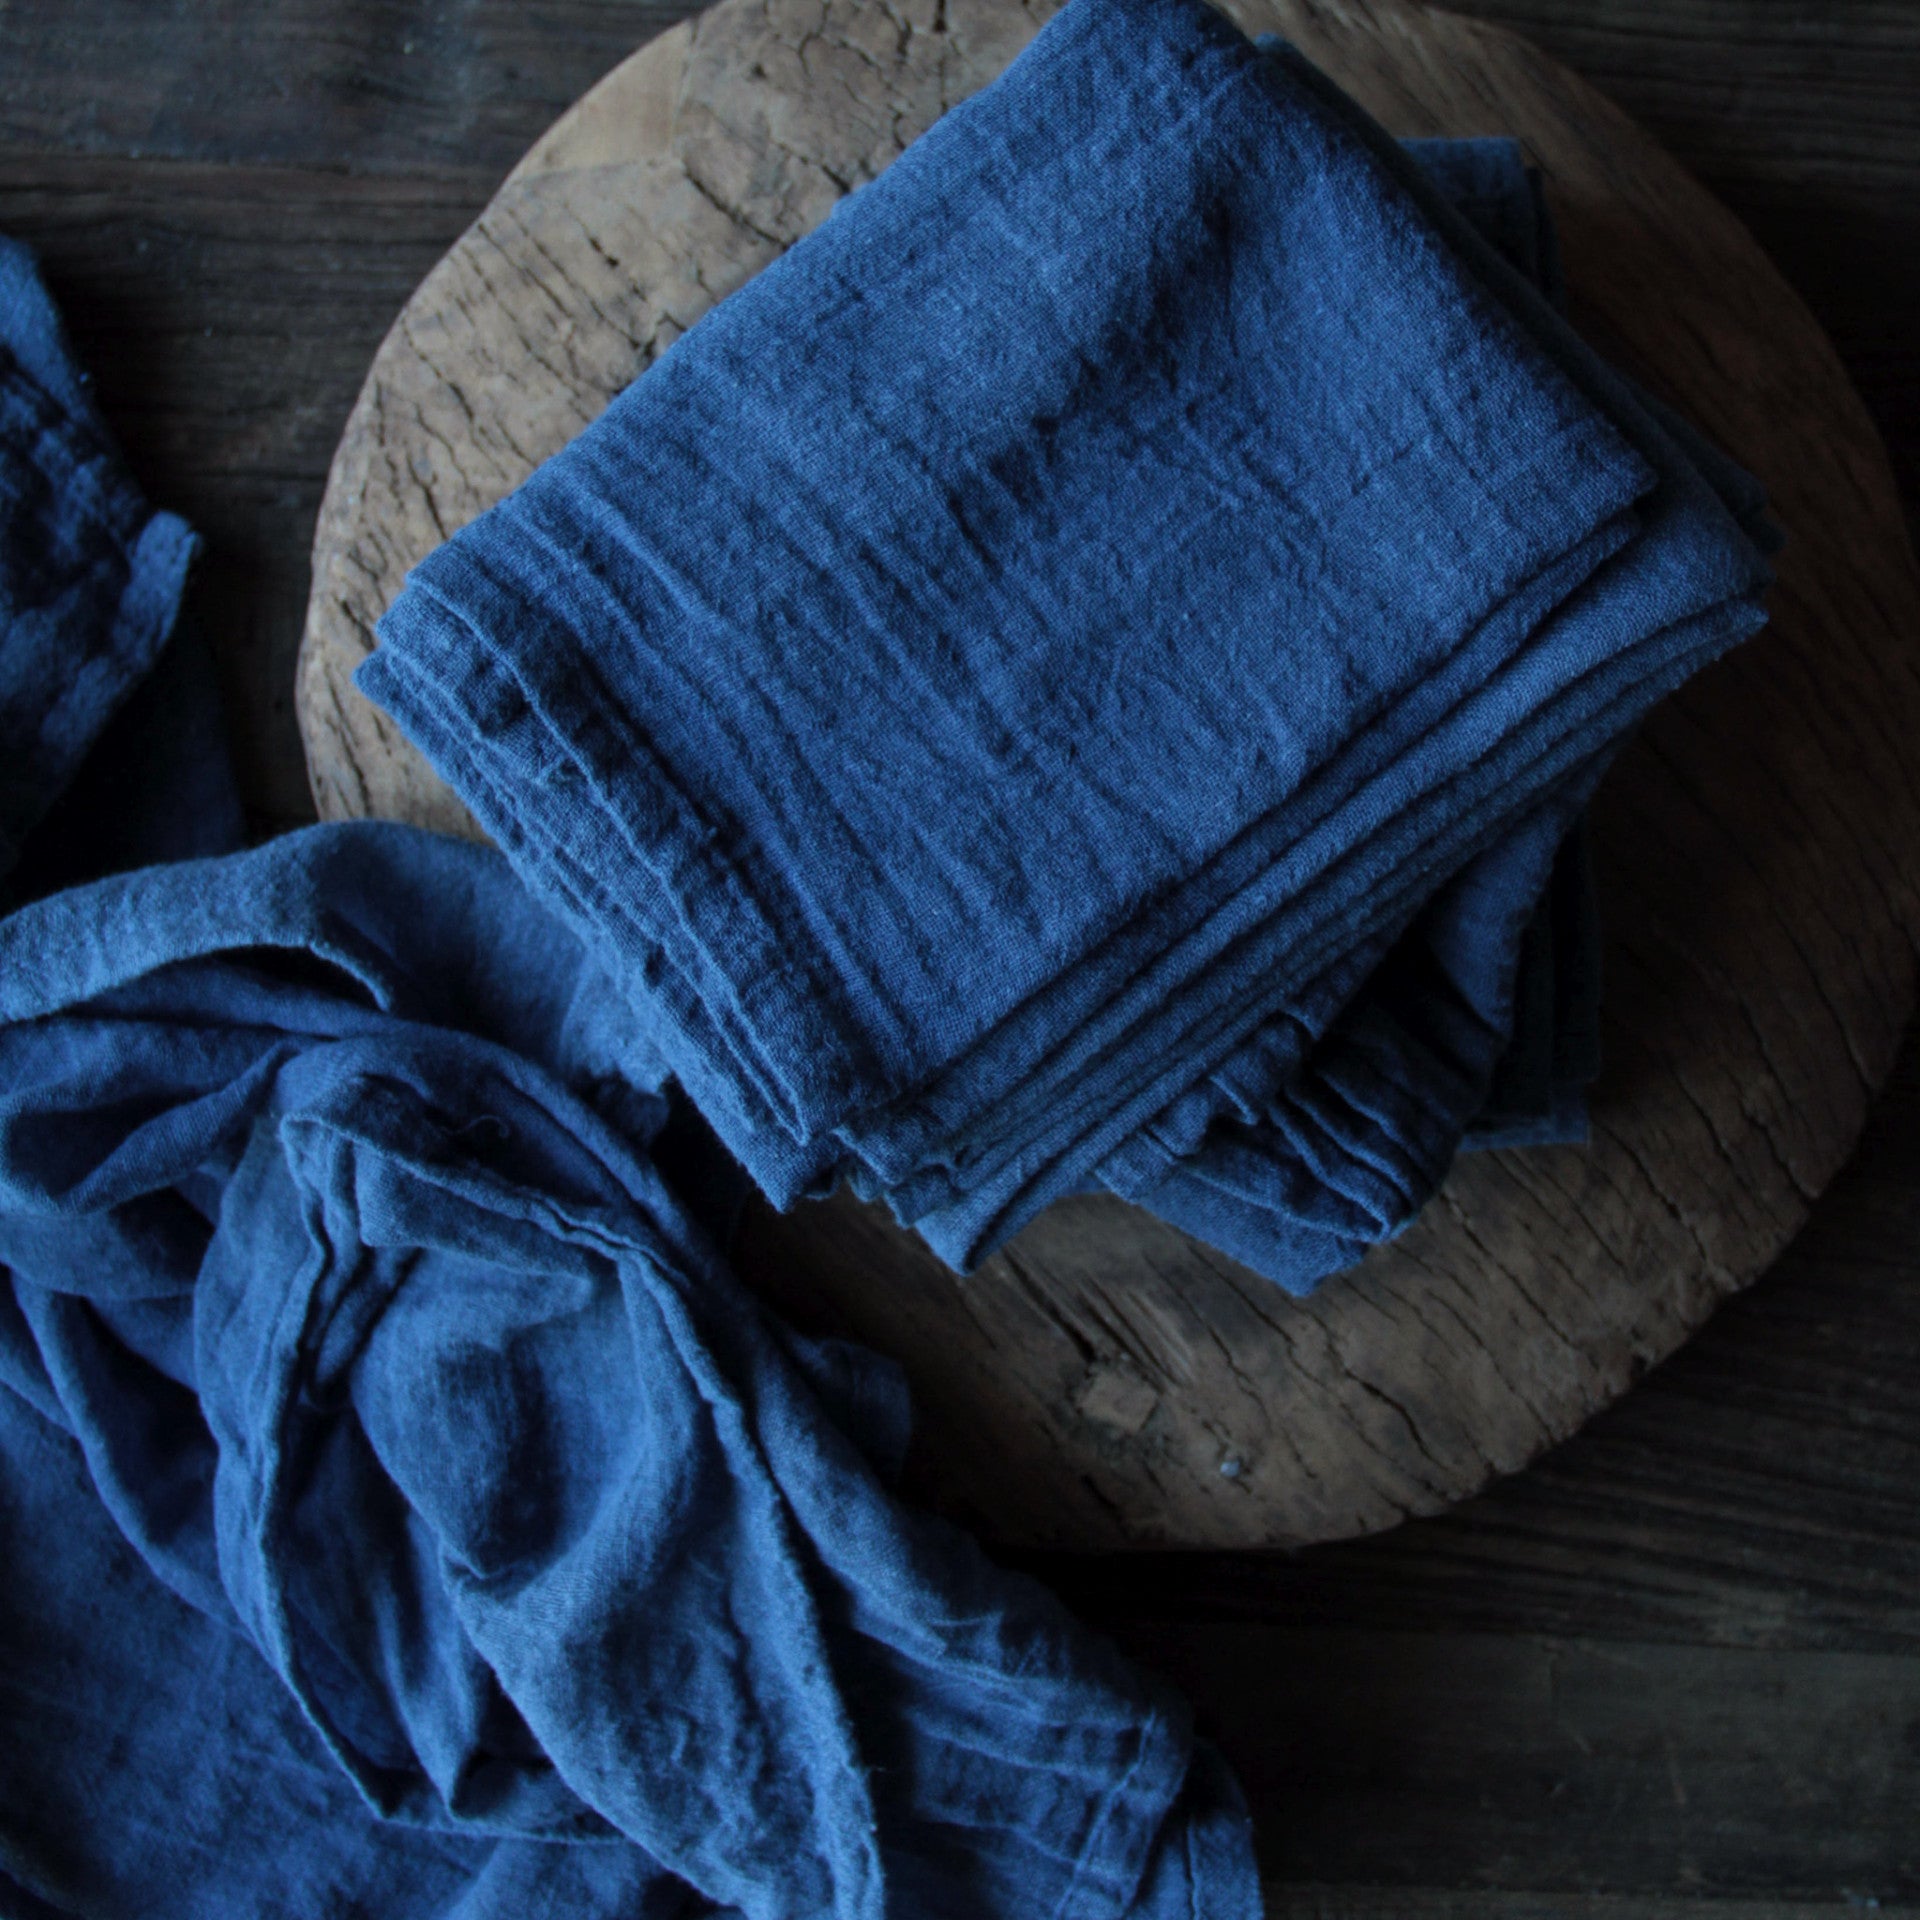 Silk & Willow. Plant Dyed Table Linens, organic cotton napkins, Indigo, Blue, Indigo dyed.